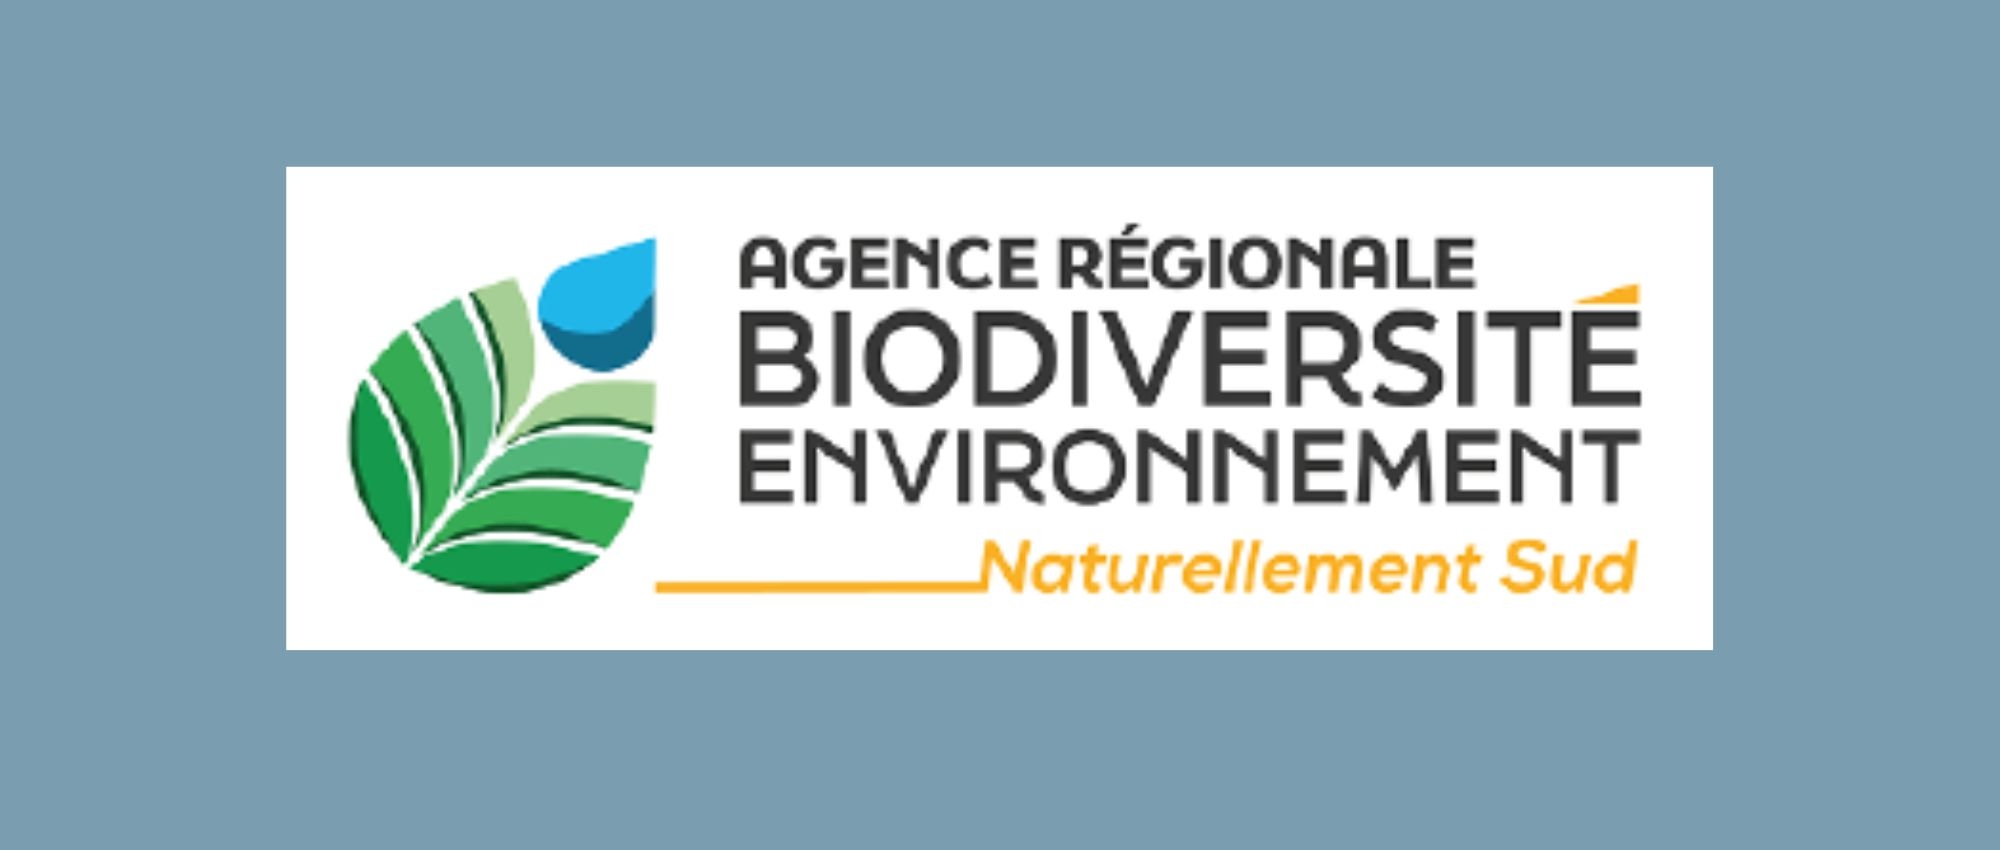 Eau & Biodiversité : cri d'alerte pour garantir sa juste part d’eau à la nature